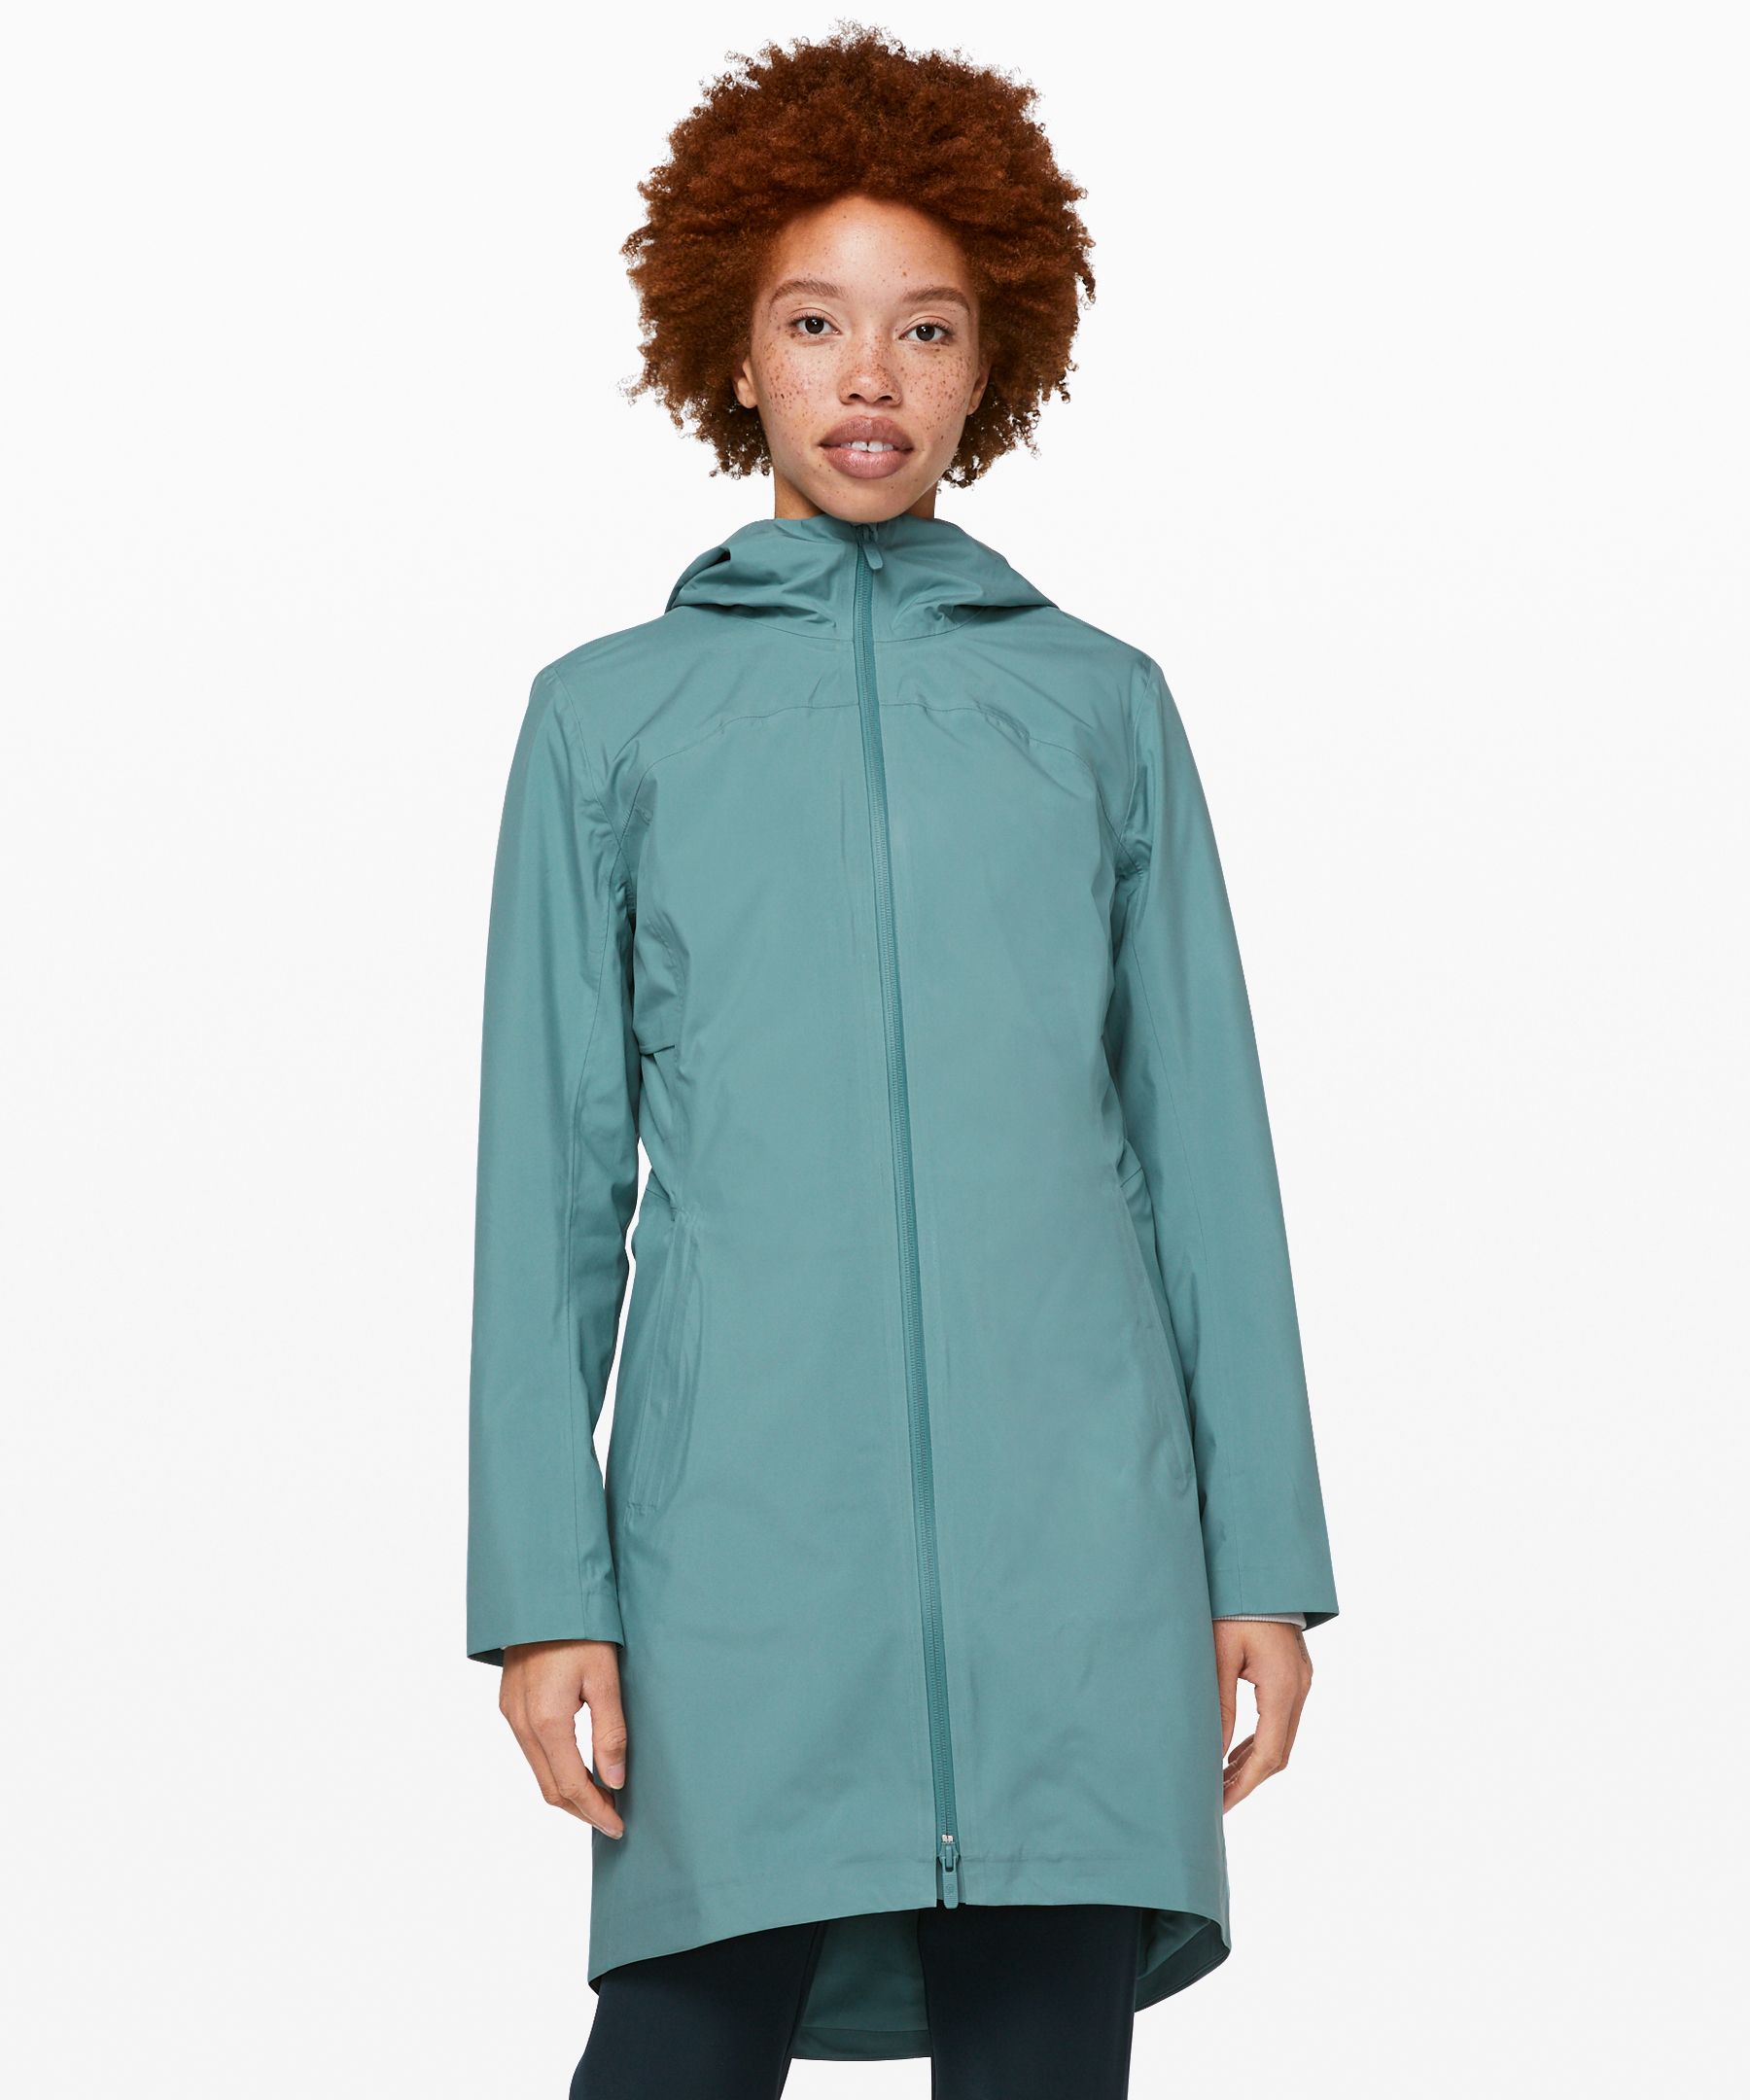 lululemon rain rebel jacket